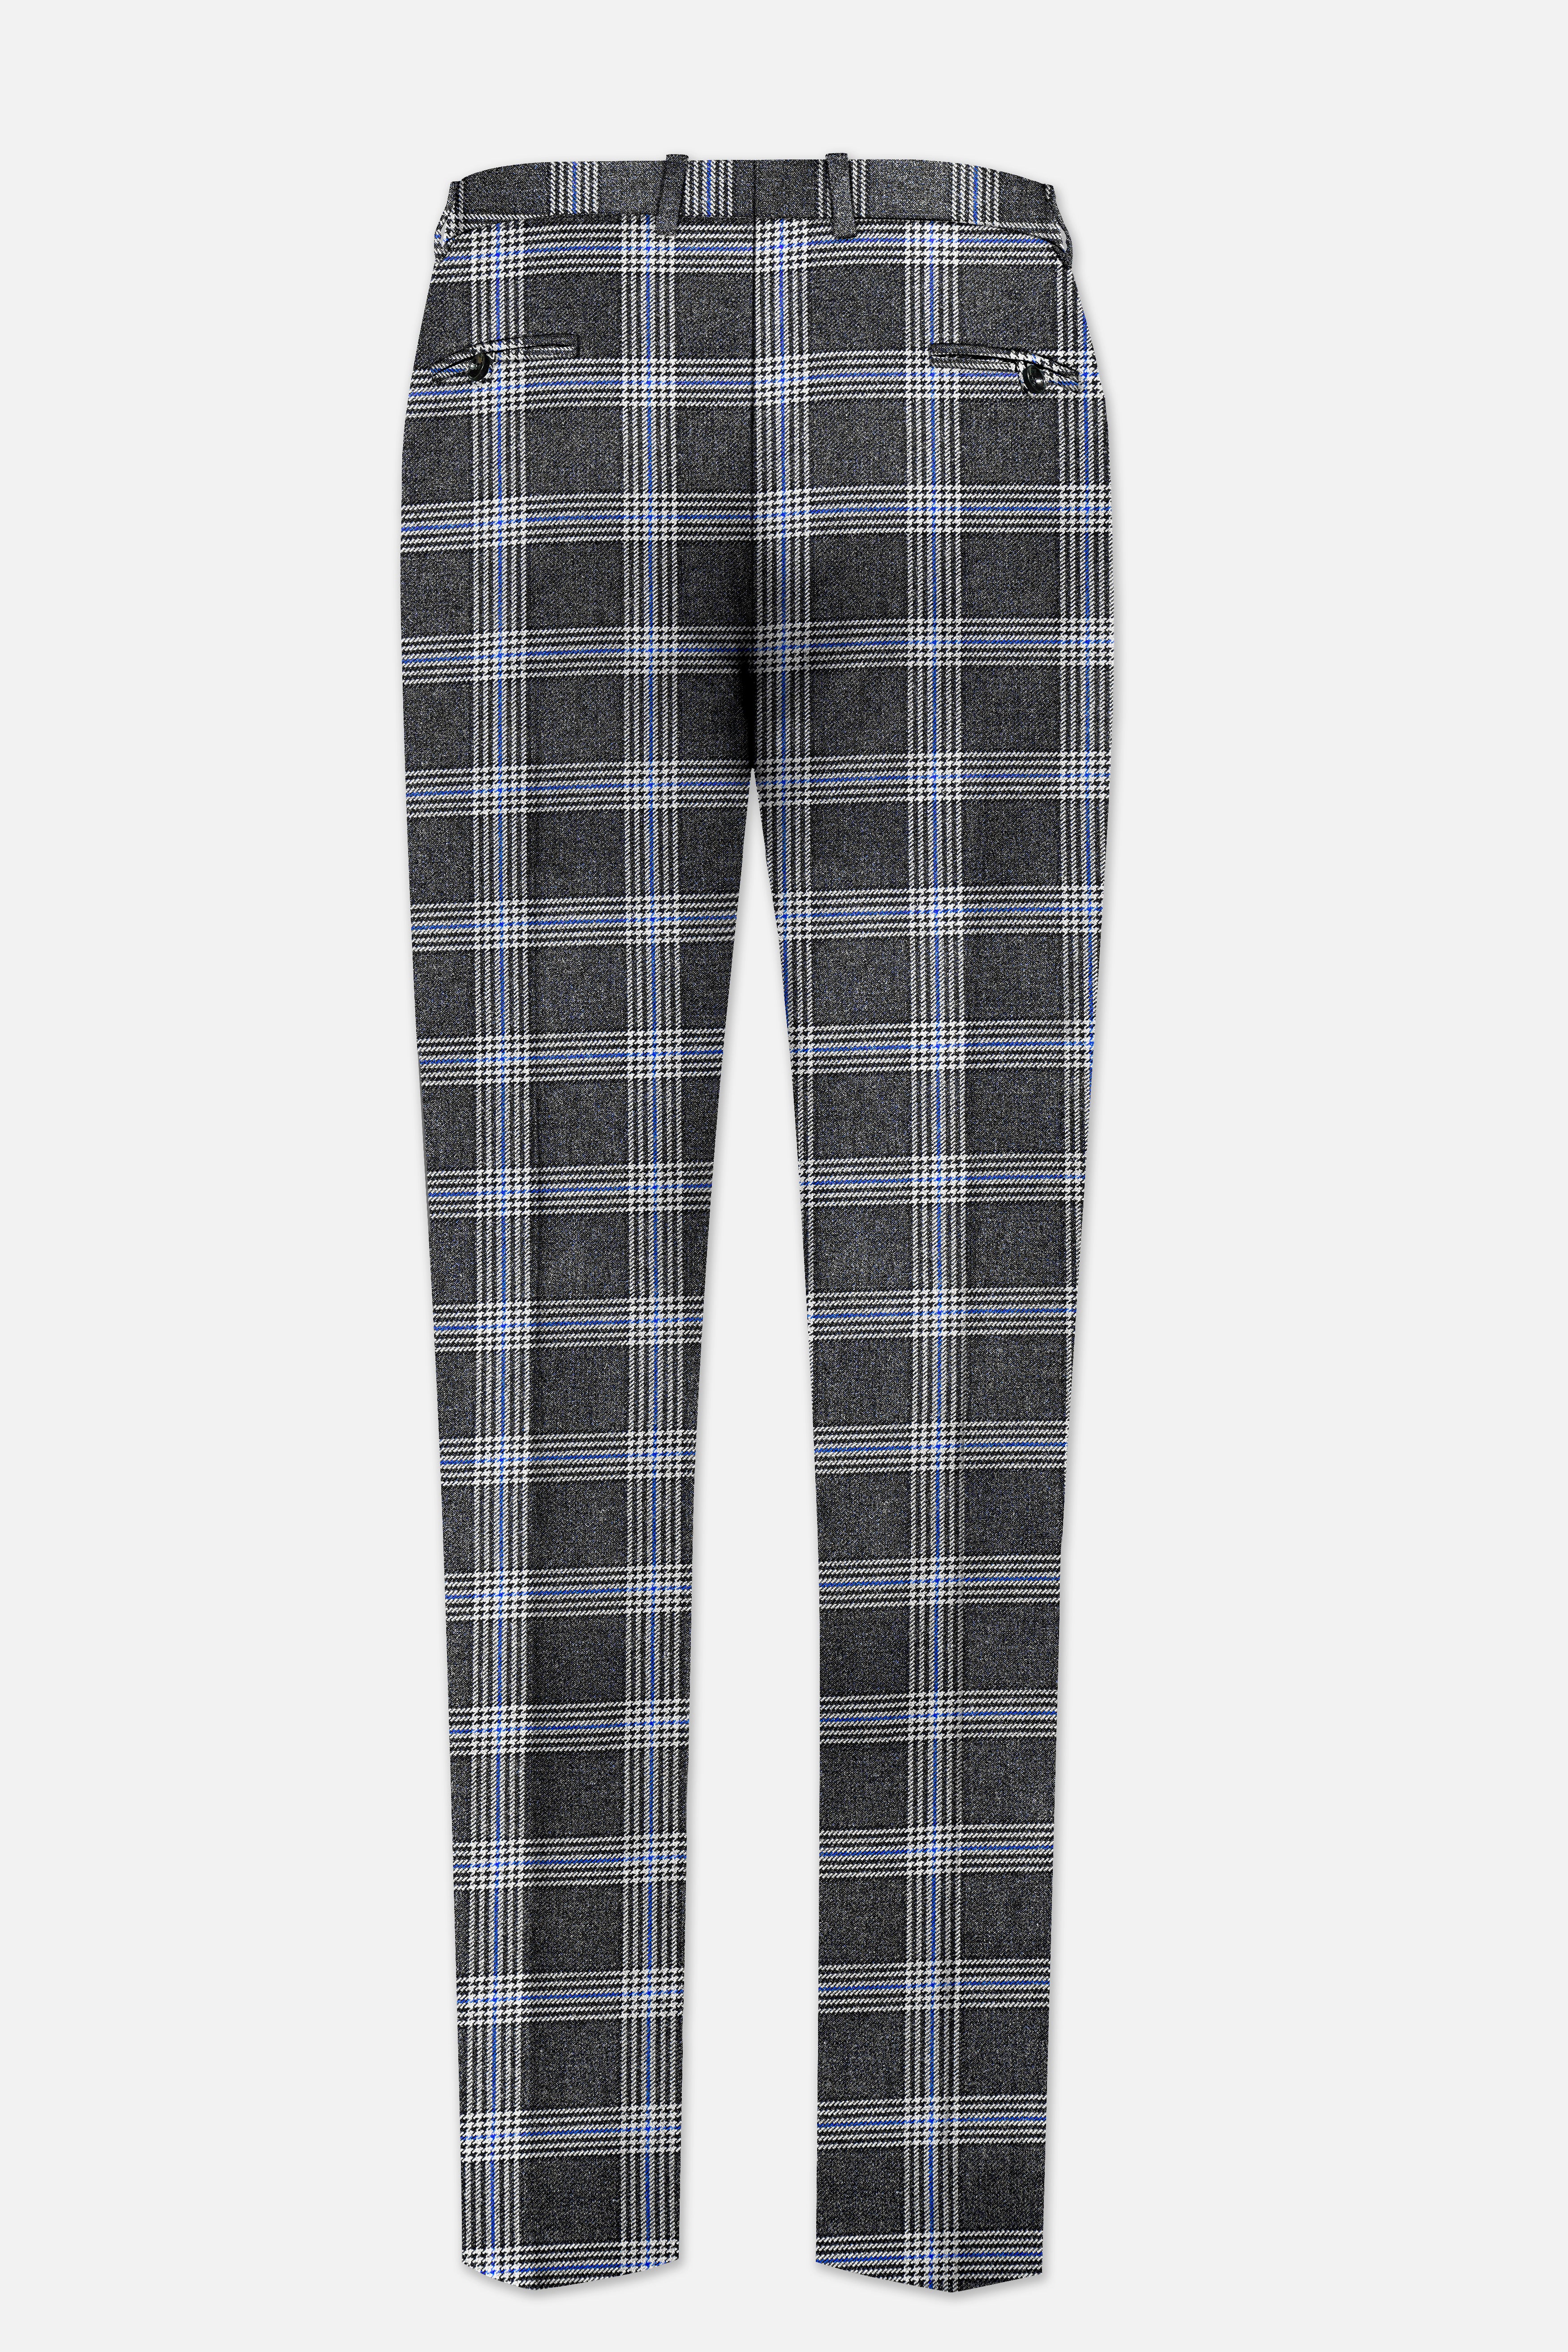 Iridium Gray Plaid Tweed Pant